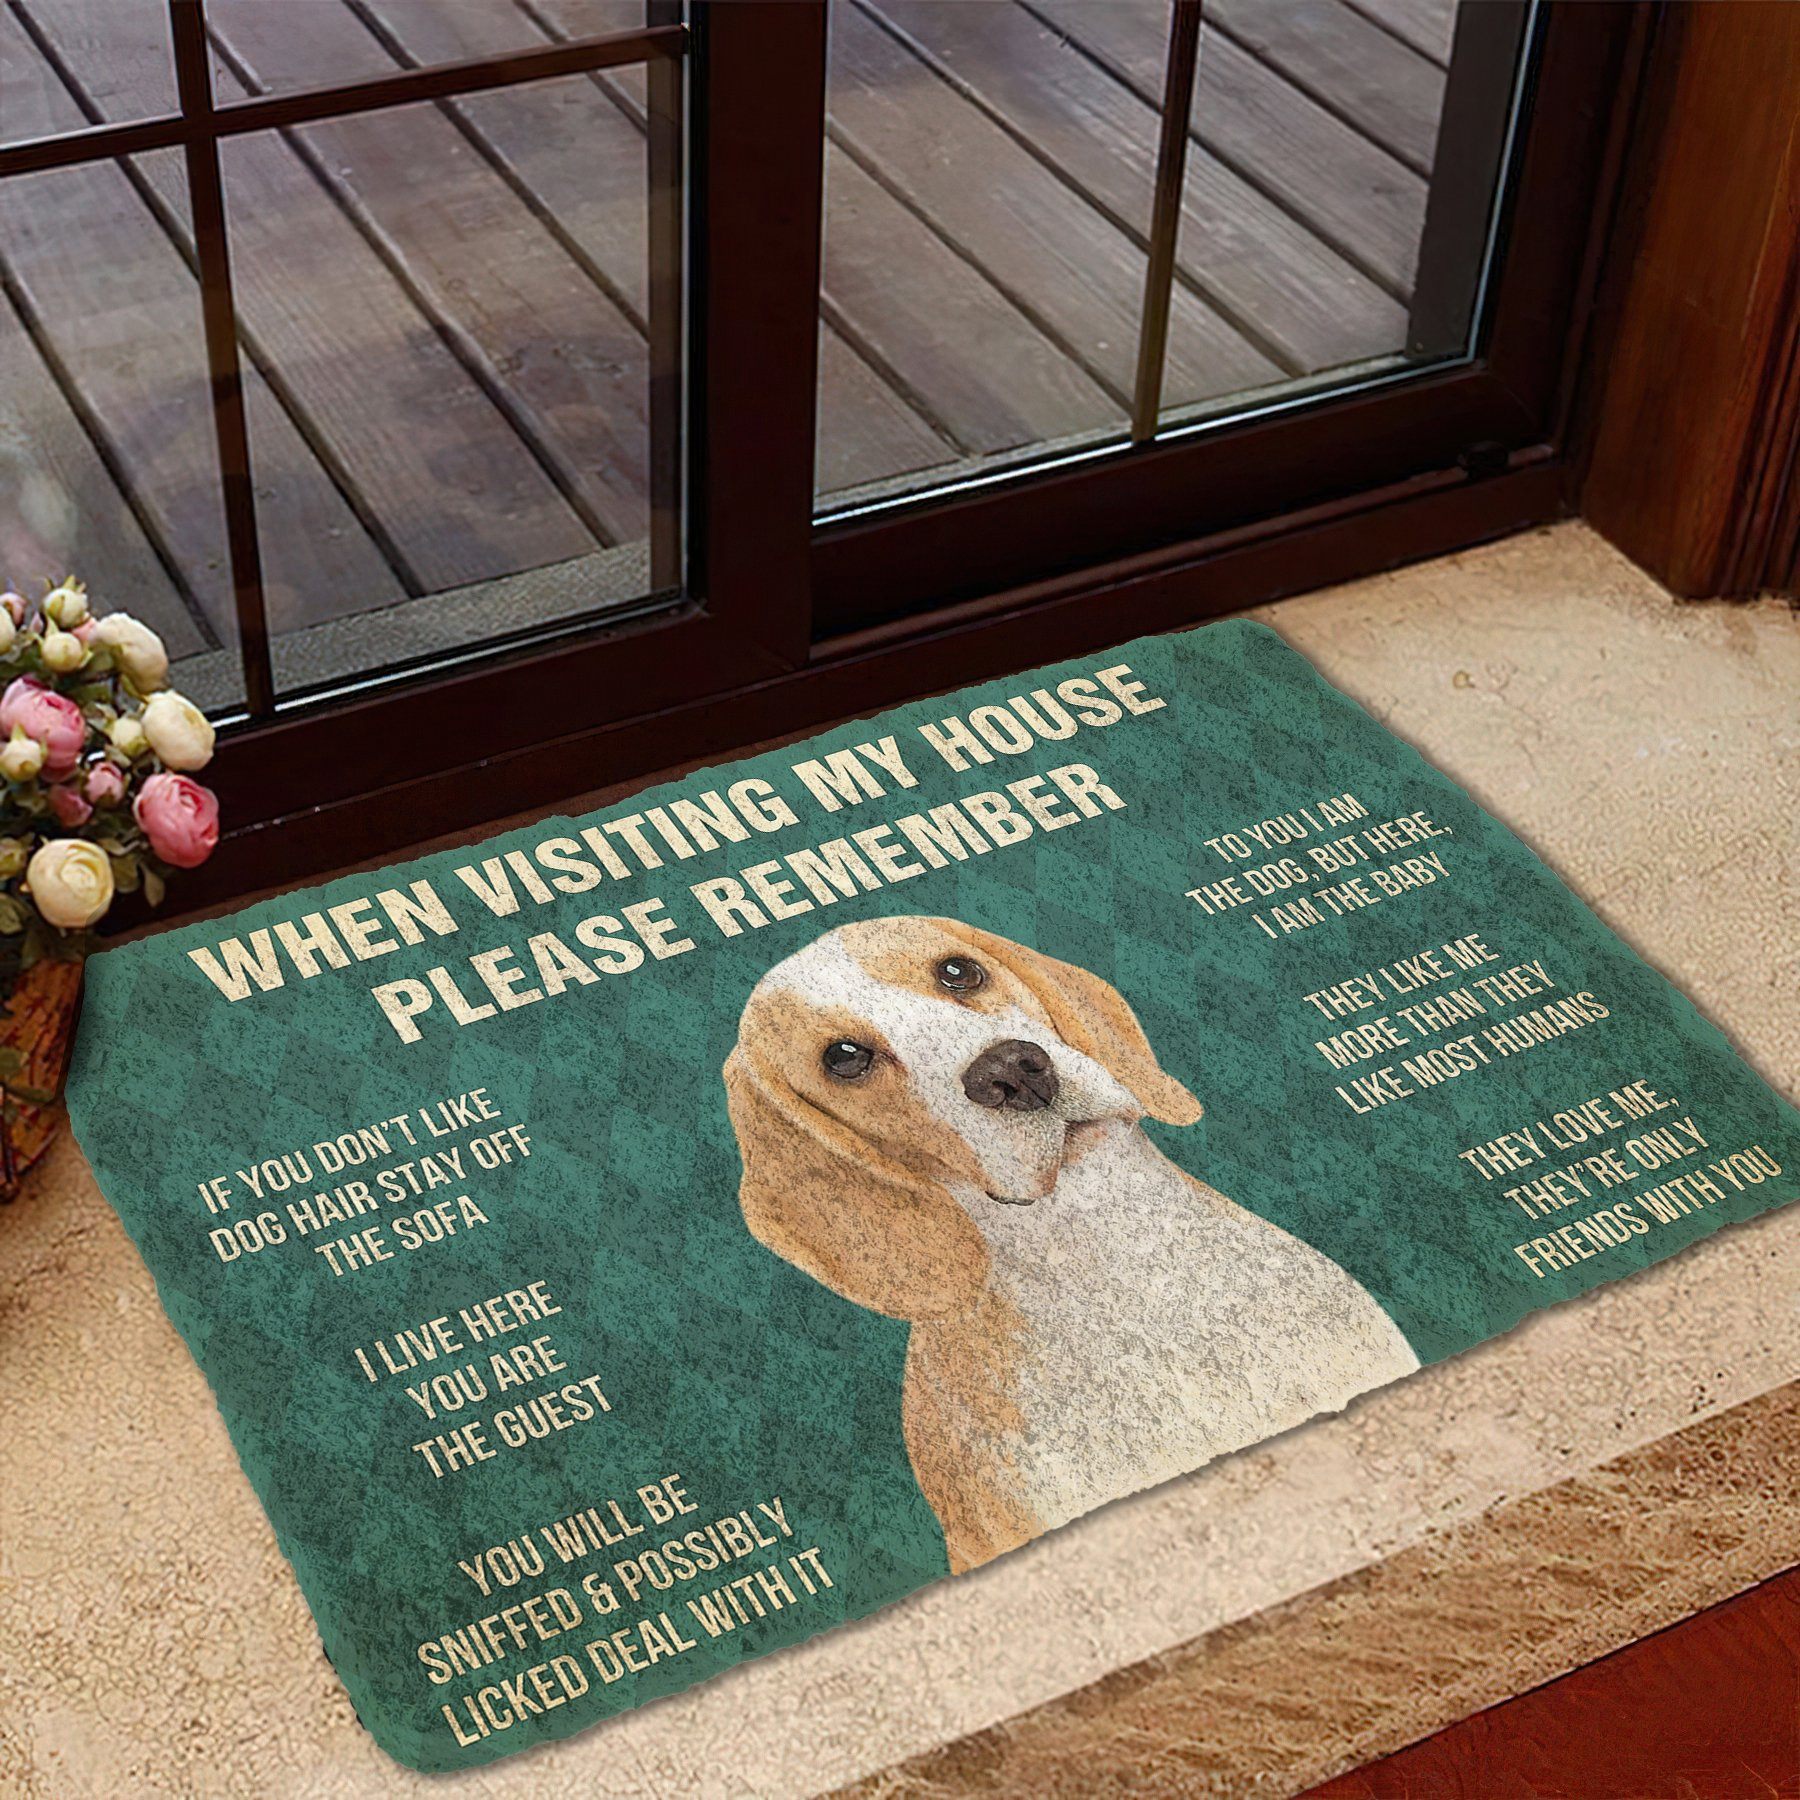 Gearhumans 3D Please Remember Lemon Beagle Dogs House Rule Custom Doormat GW2204217 Doormat 